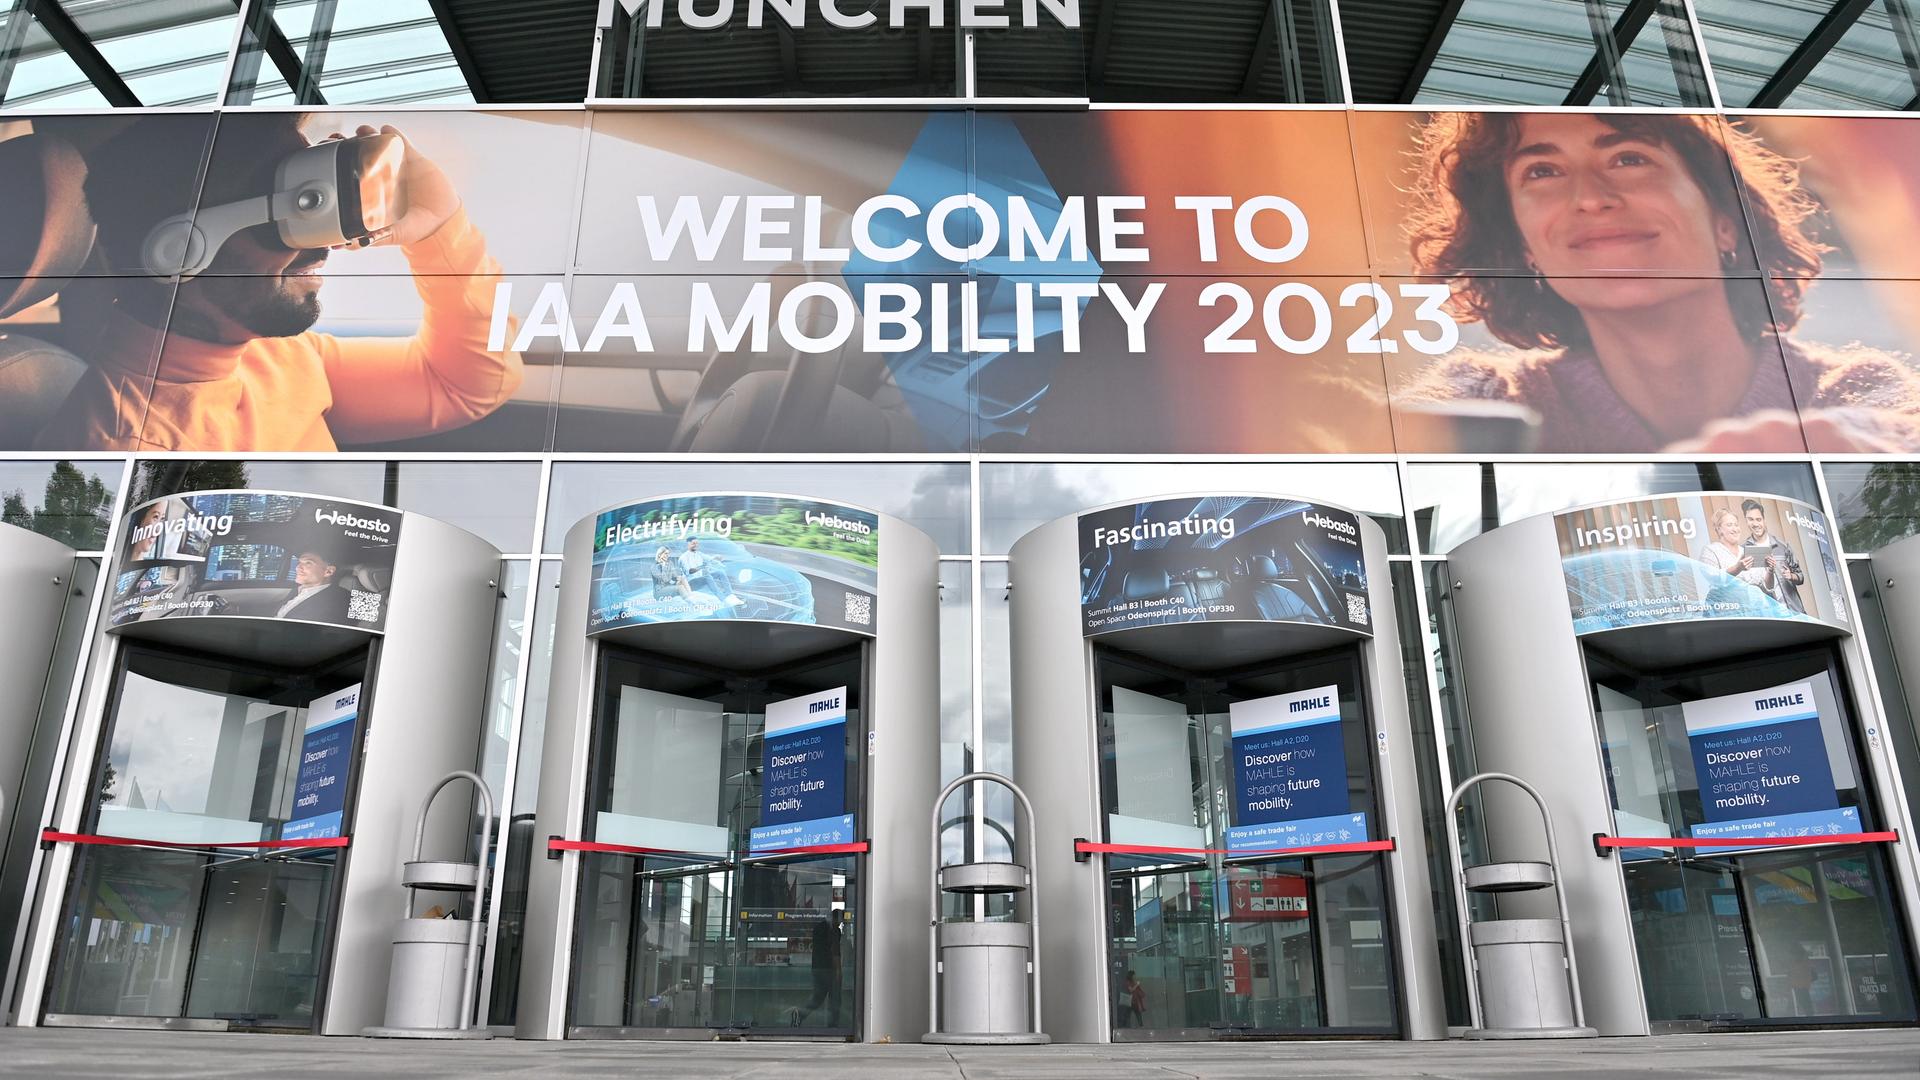 Das Fotos zeigt den Eingang zur IAA Mobility 2023 in der Messe Riem in München.